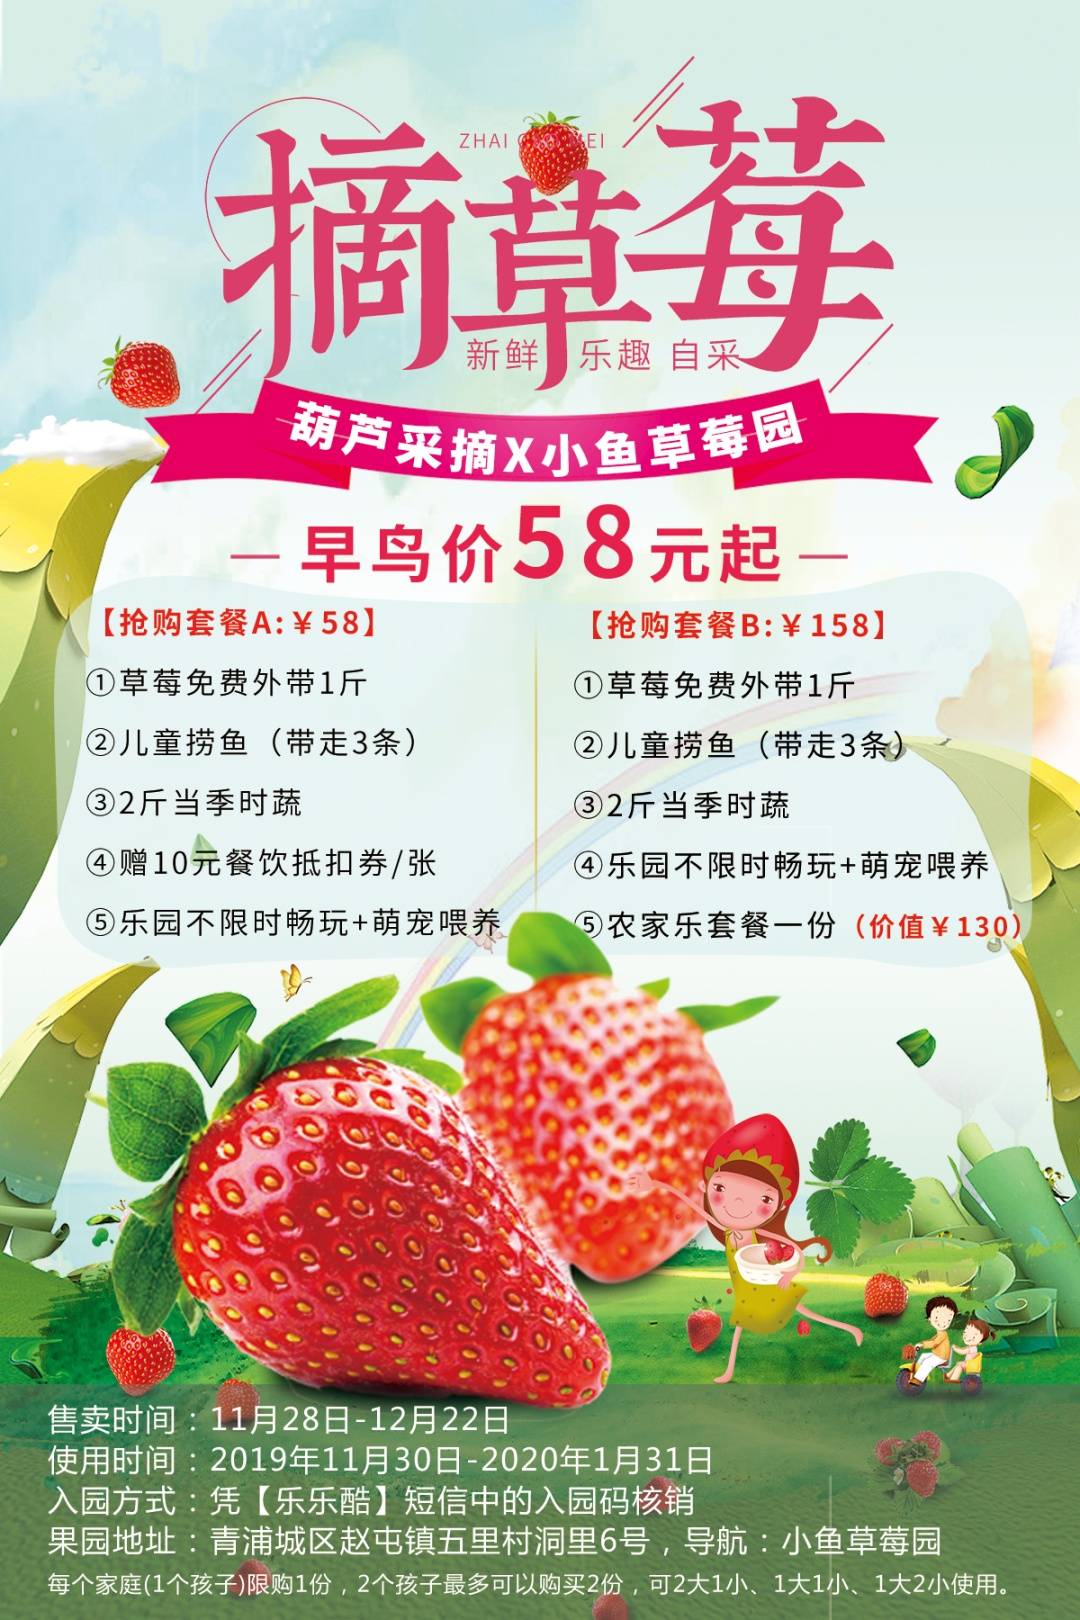 【上海】158元抢草莓套餐！草莓1斤+儿童捞鱼+2斤当季时蔬+农家乐套餐一份！还能不限时畅玩乐园